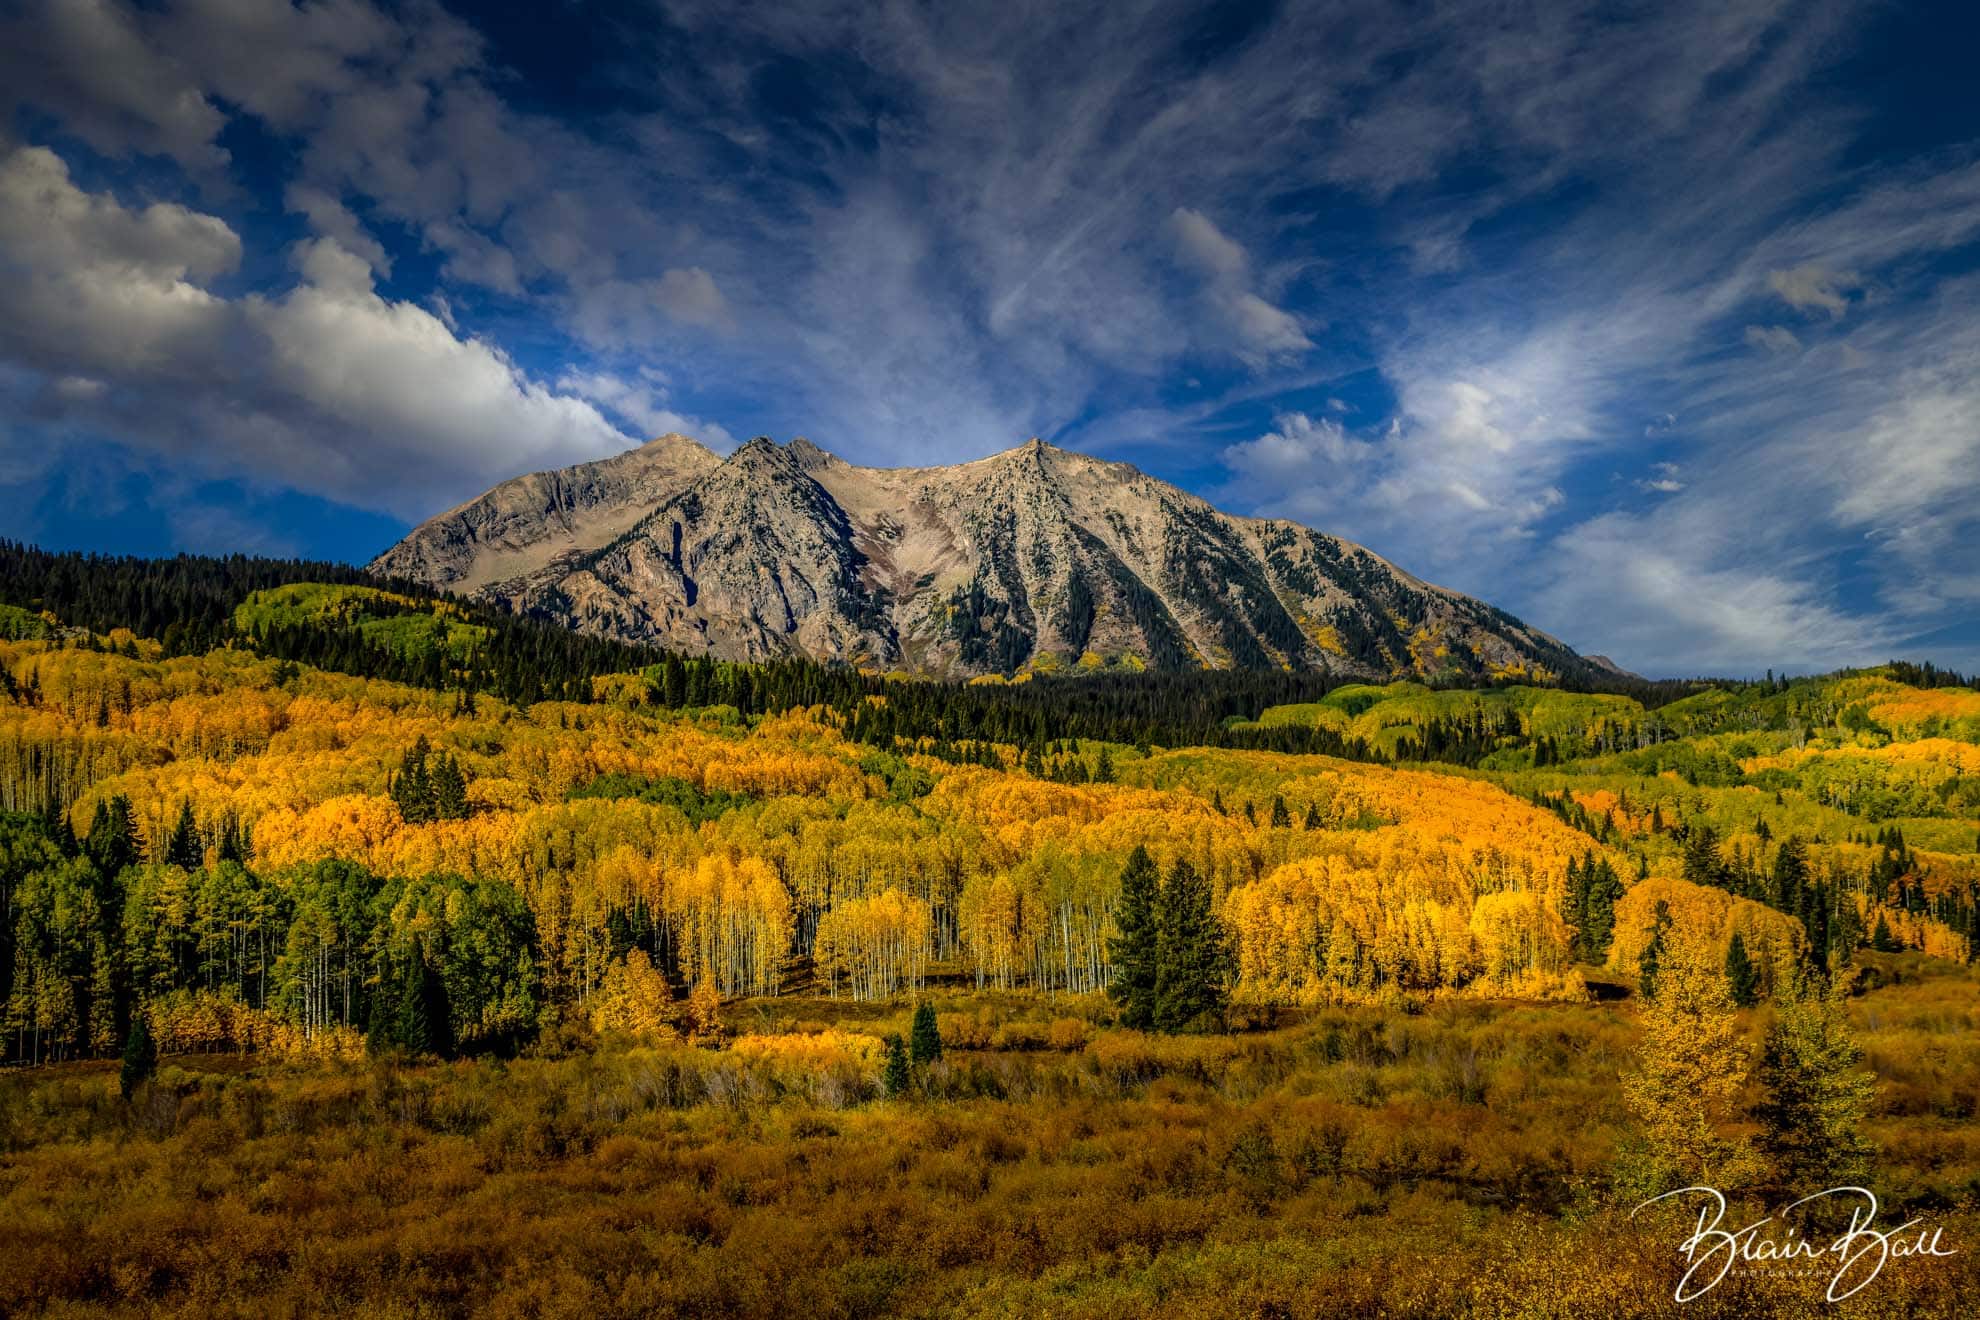 East Beckwith Mountain in Colorado - ©Blair Ball Photography Image